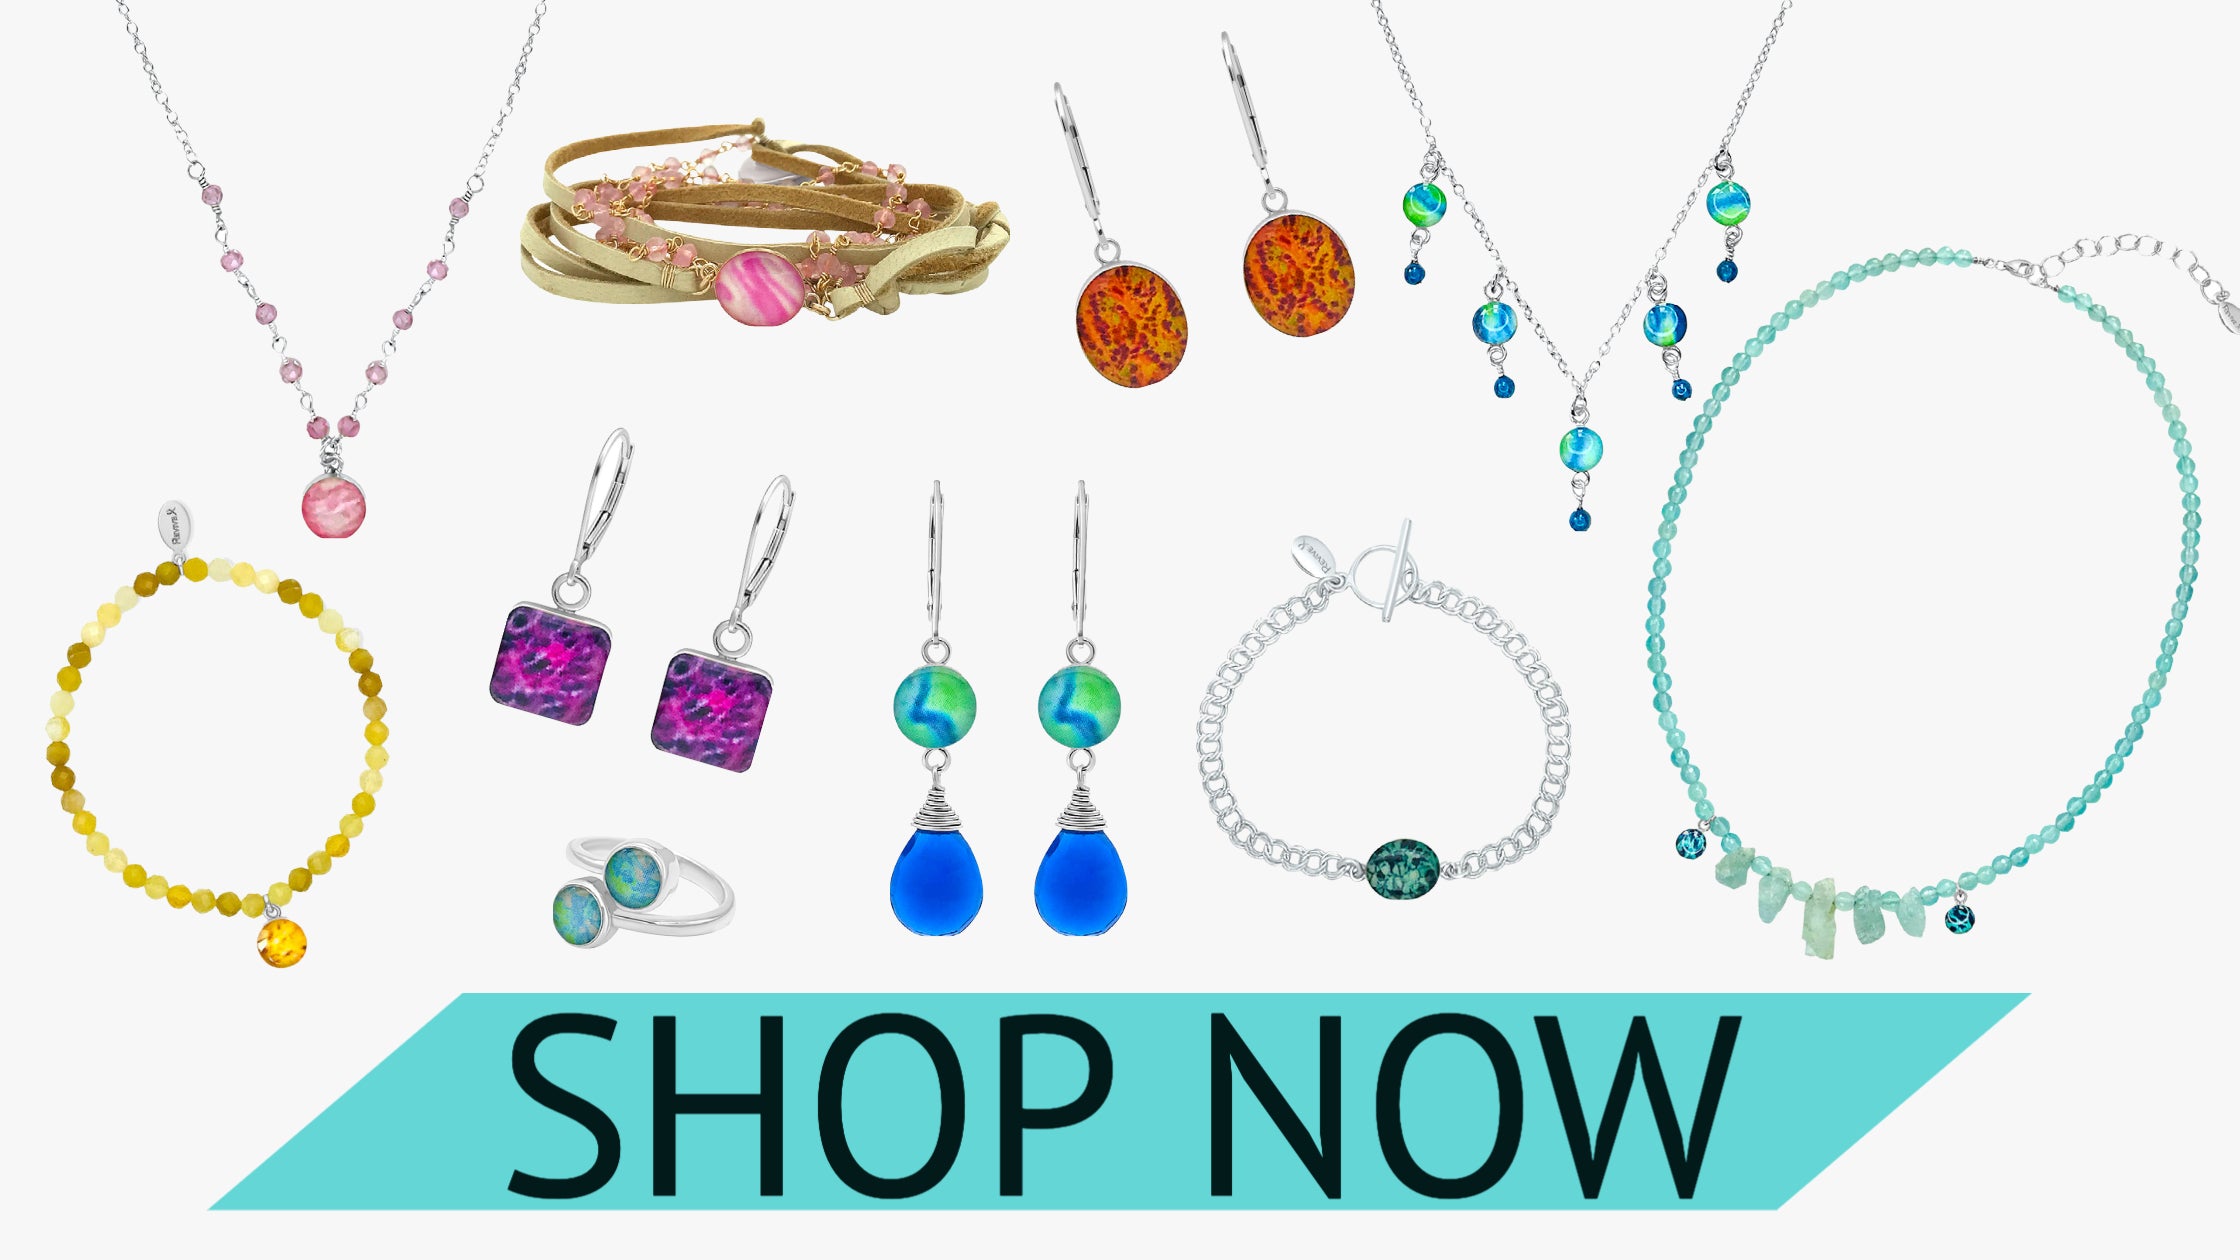 sneak peek of jewelry sale items  